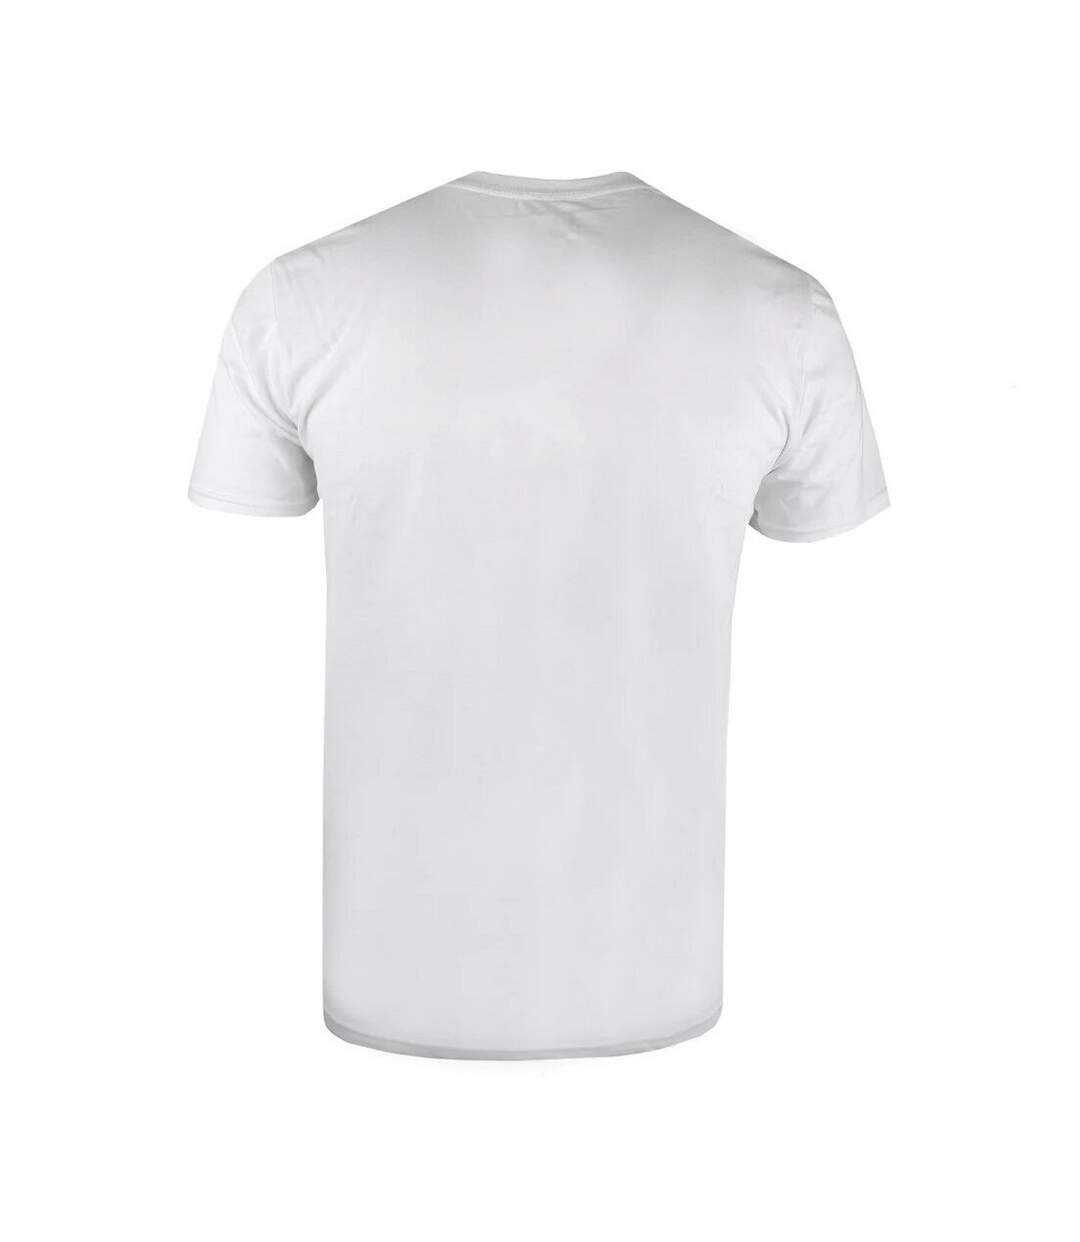 Marvel - T-shirt - Homme (Blanc) - UTTV476